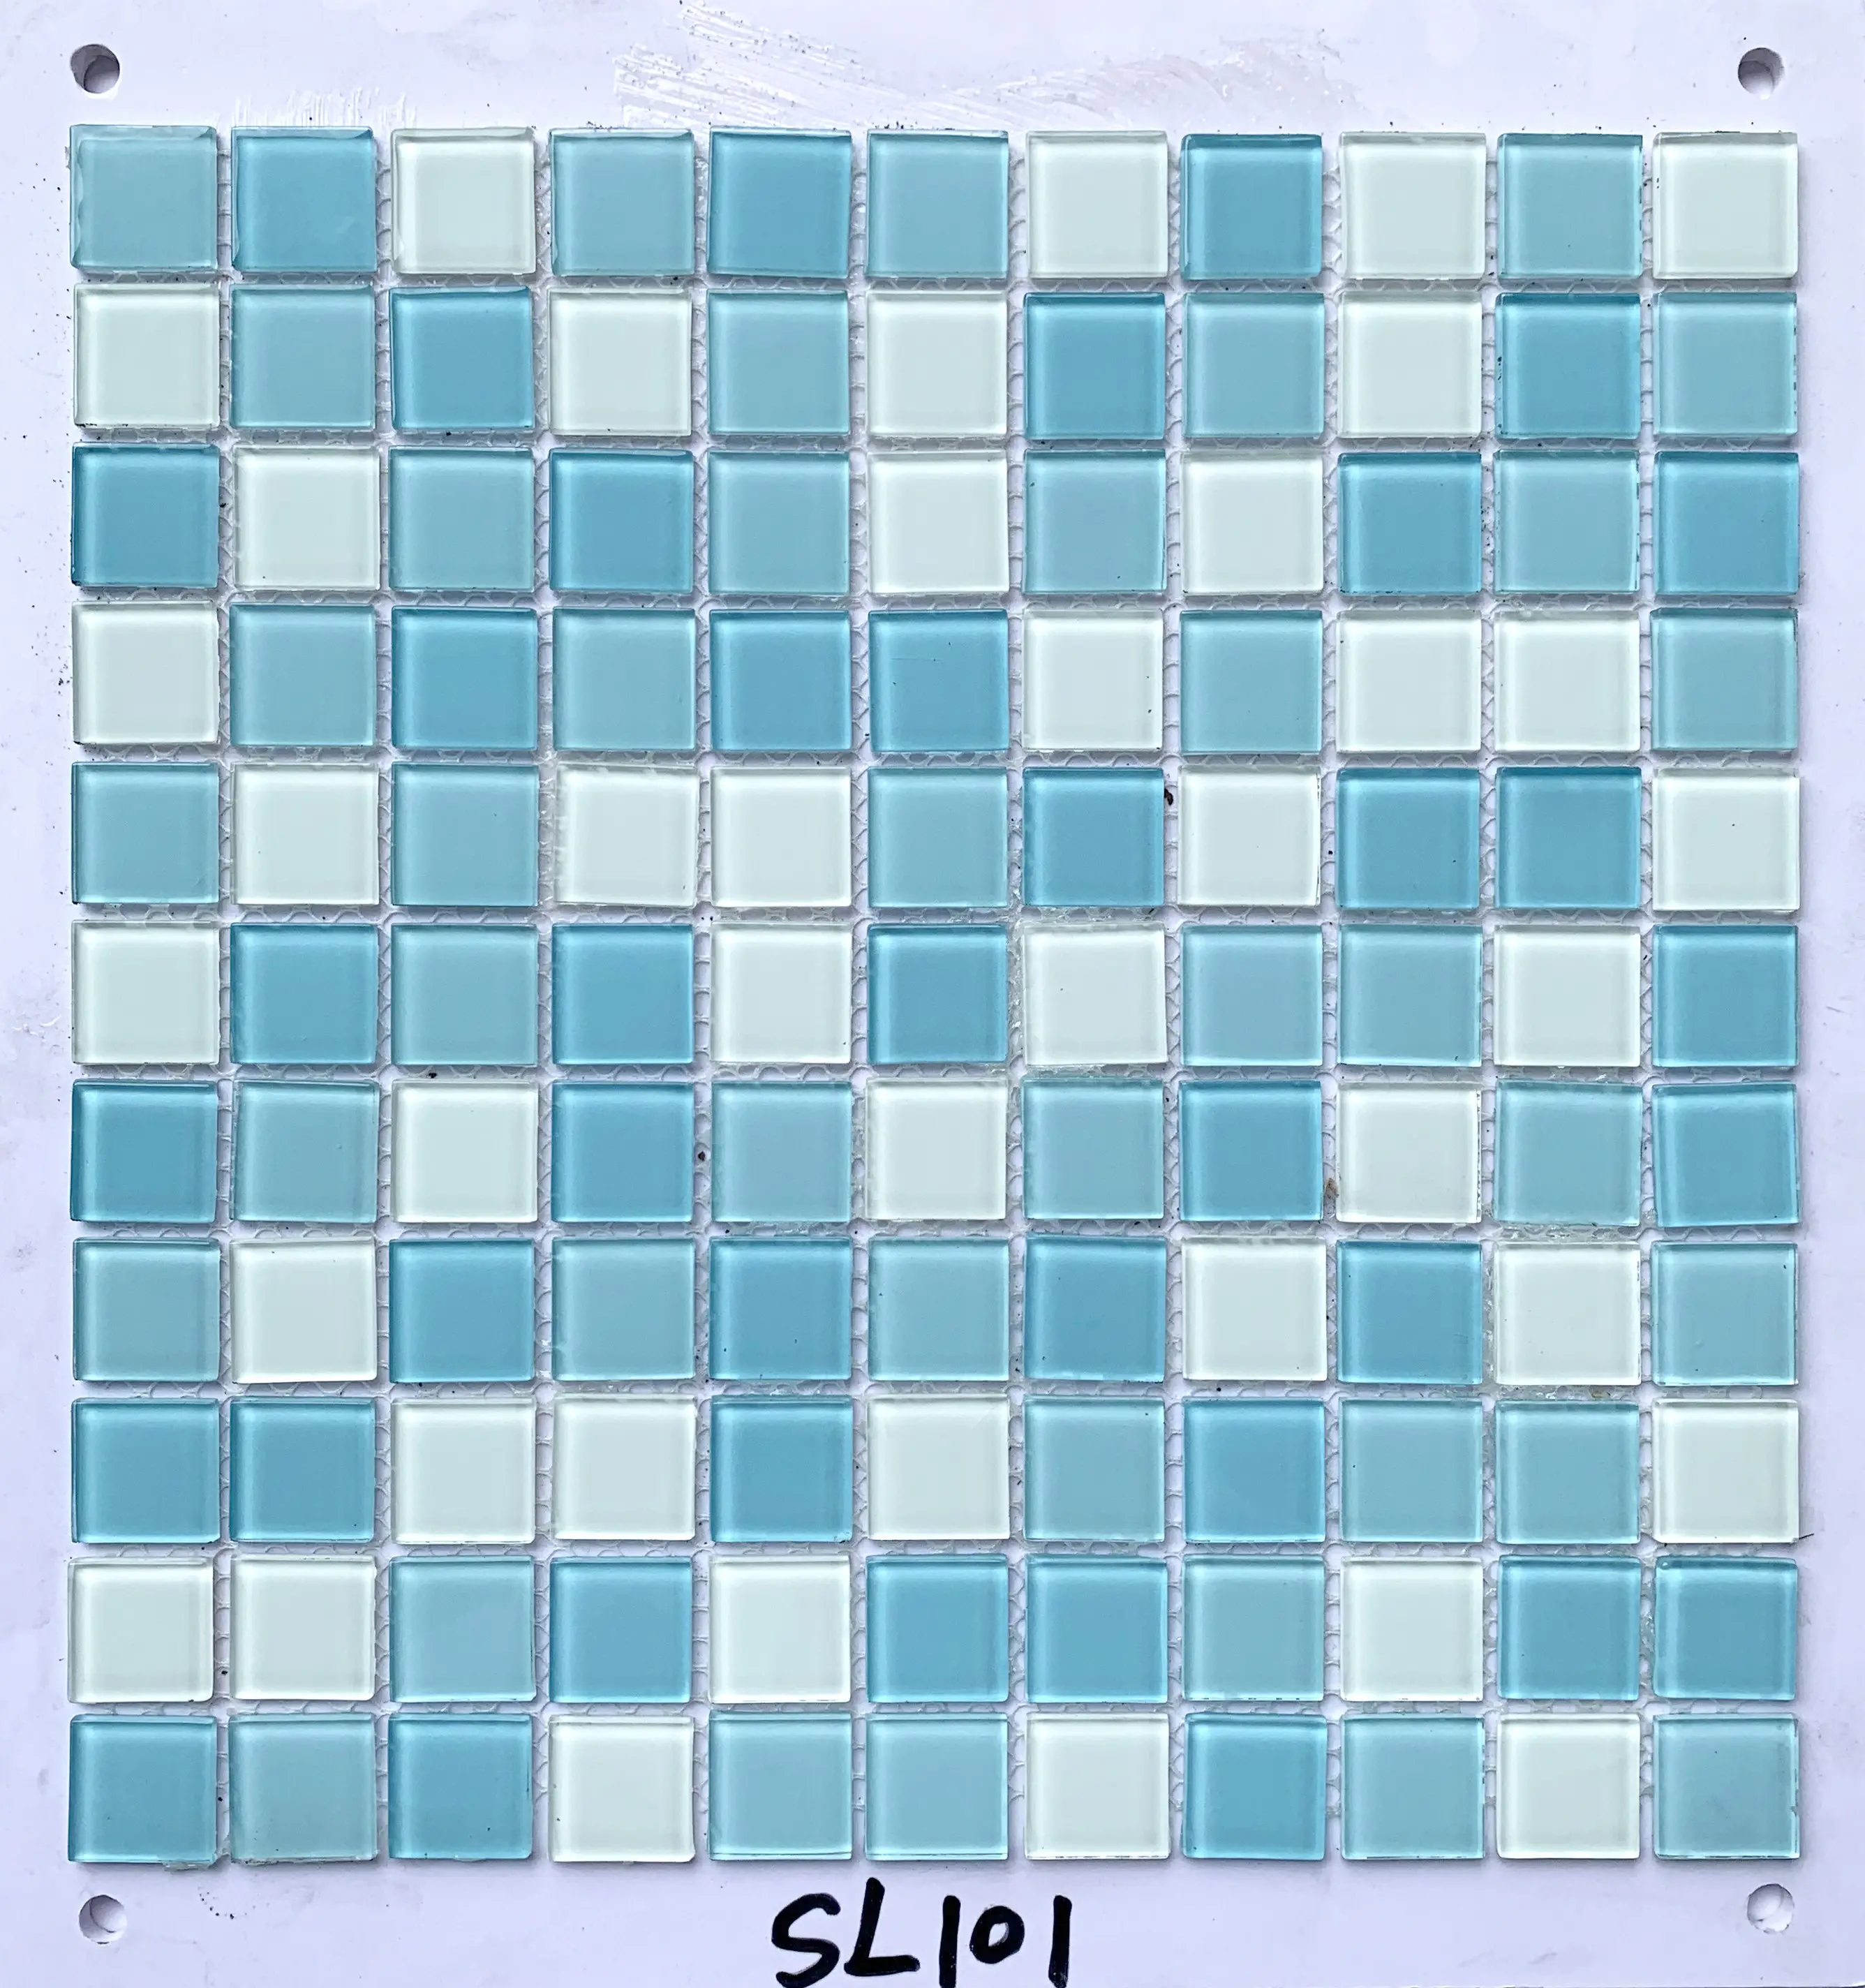 25x25x3.5mm tessere di mosaico di cristallo 300x300mm cucina mista pavimento piscina decorazioni in pietra cinese lucidata mosaici